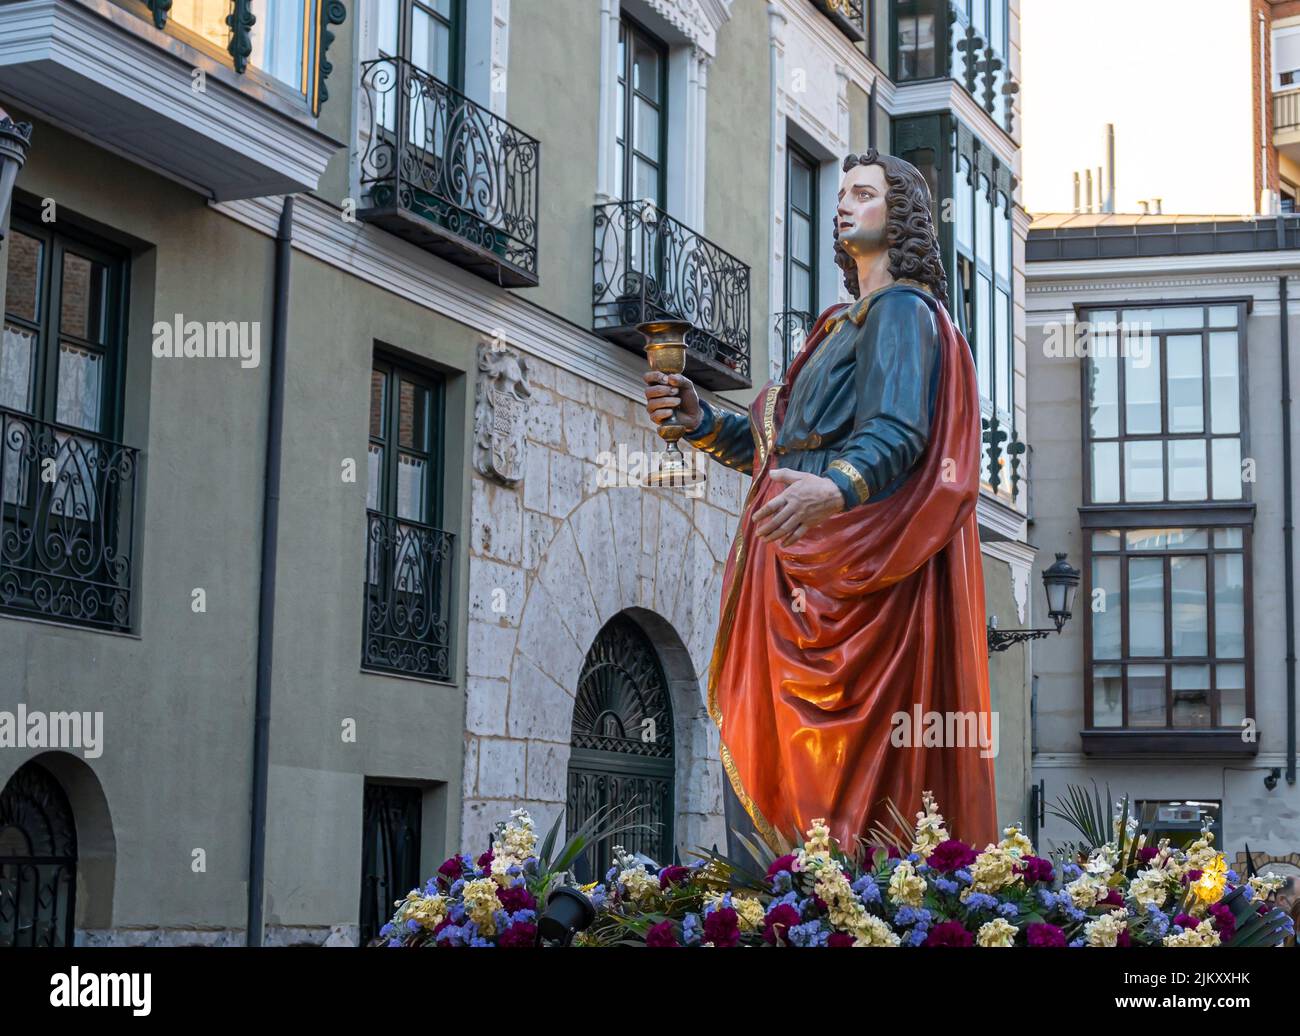 Semana santa Valladolid, paso en procesión de san Juan evangelista del siglo XVIII saliendo de la iglesia de san Martin durante el viernes santo Stock Photo